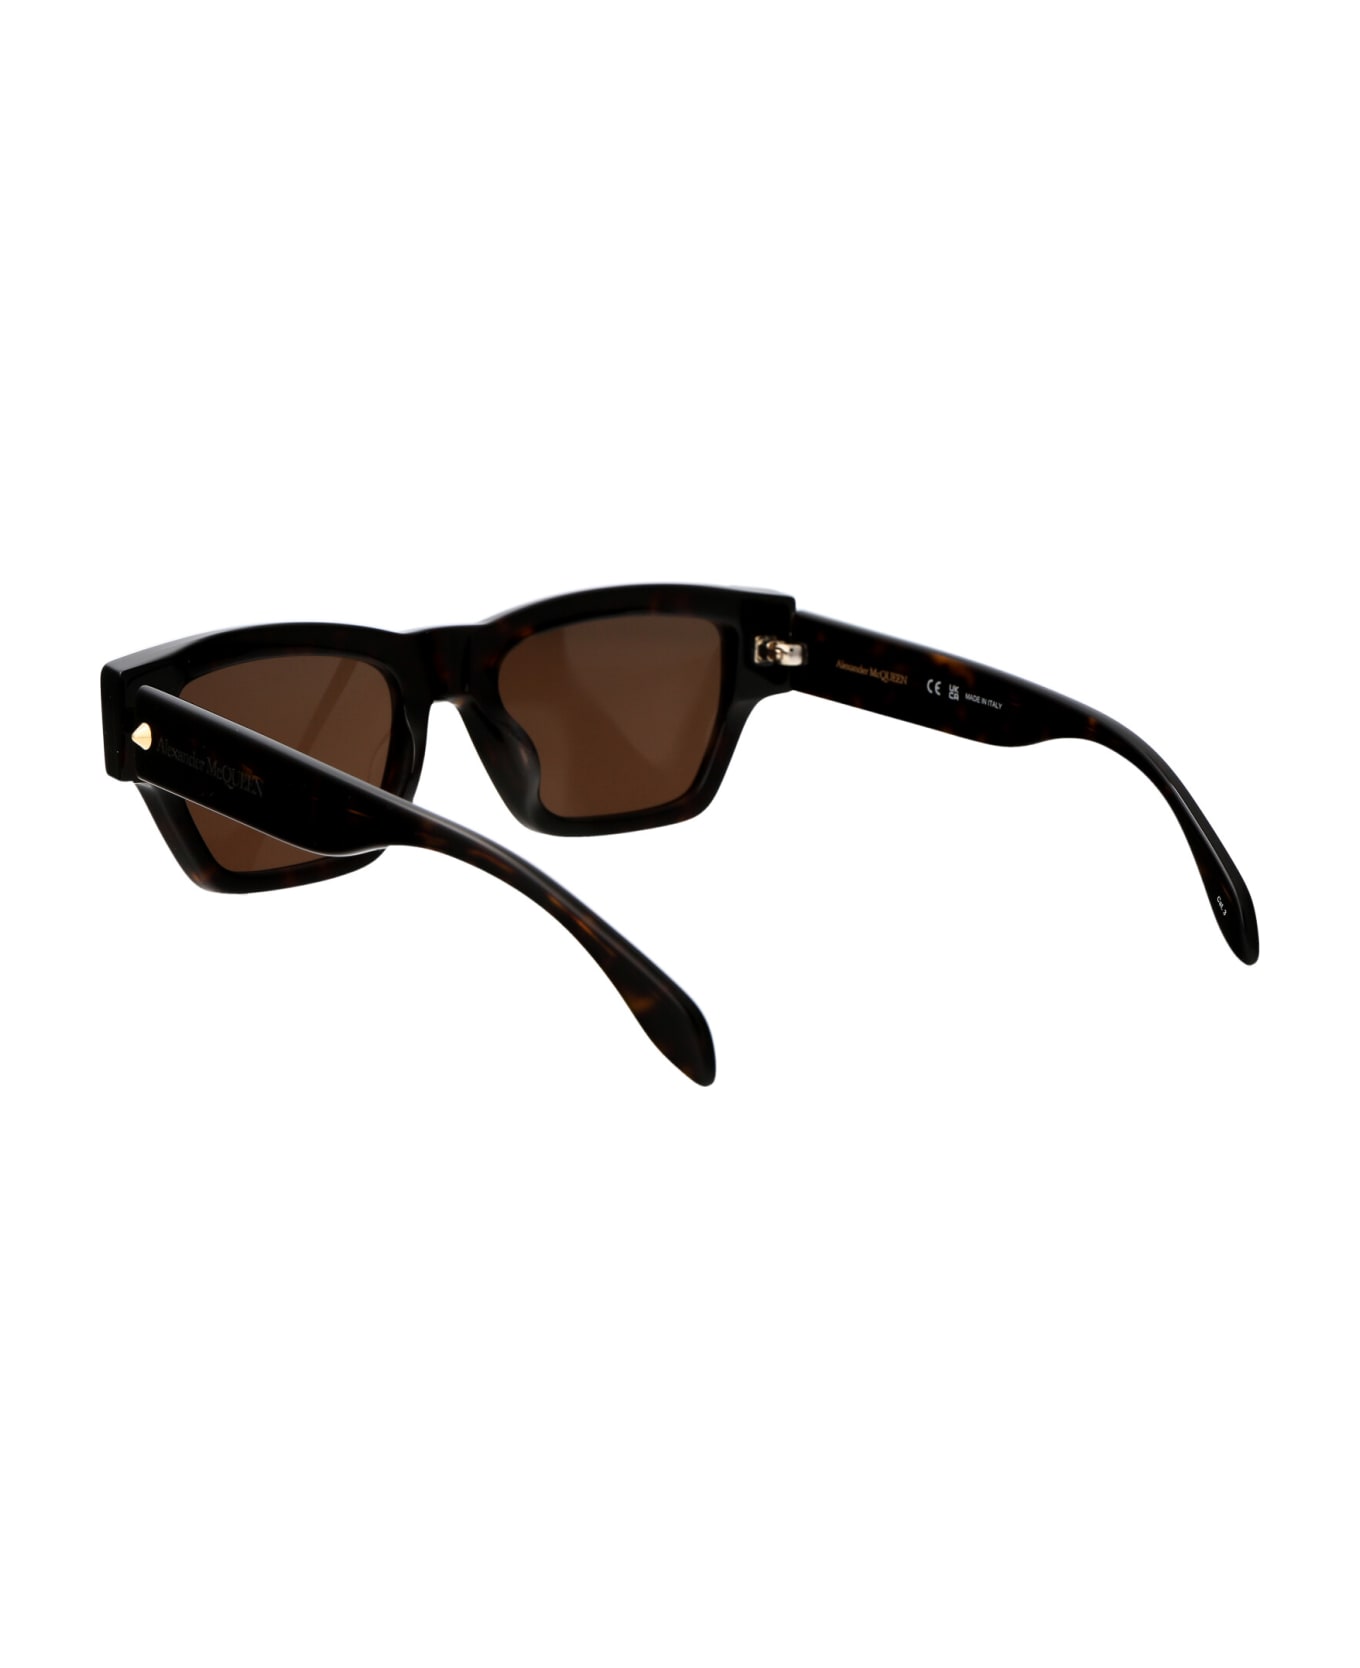 Alexander McQueen Eyewear Am0409s Sunglasses - 002 HAVANA HAVANA BROWN